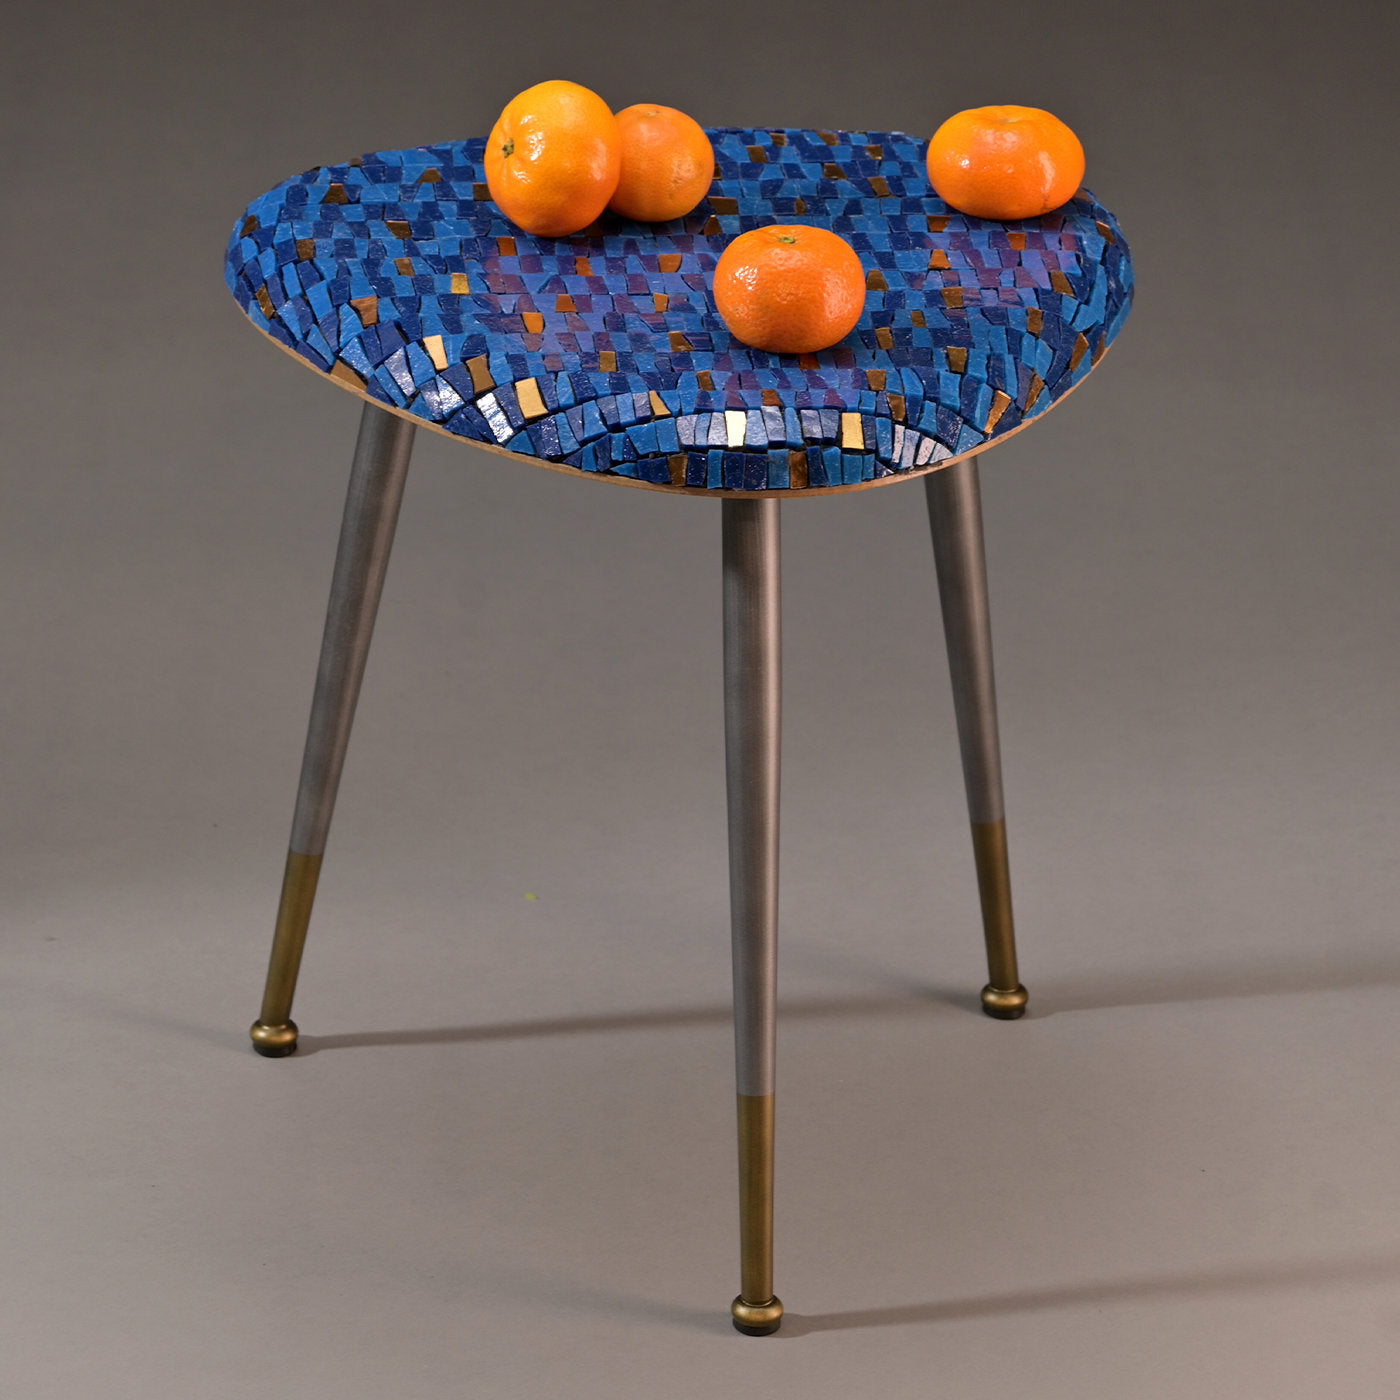 Casarialto Atelier Acqua coffee table by Michela Nardin - Alternative view 2